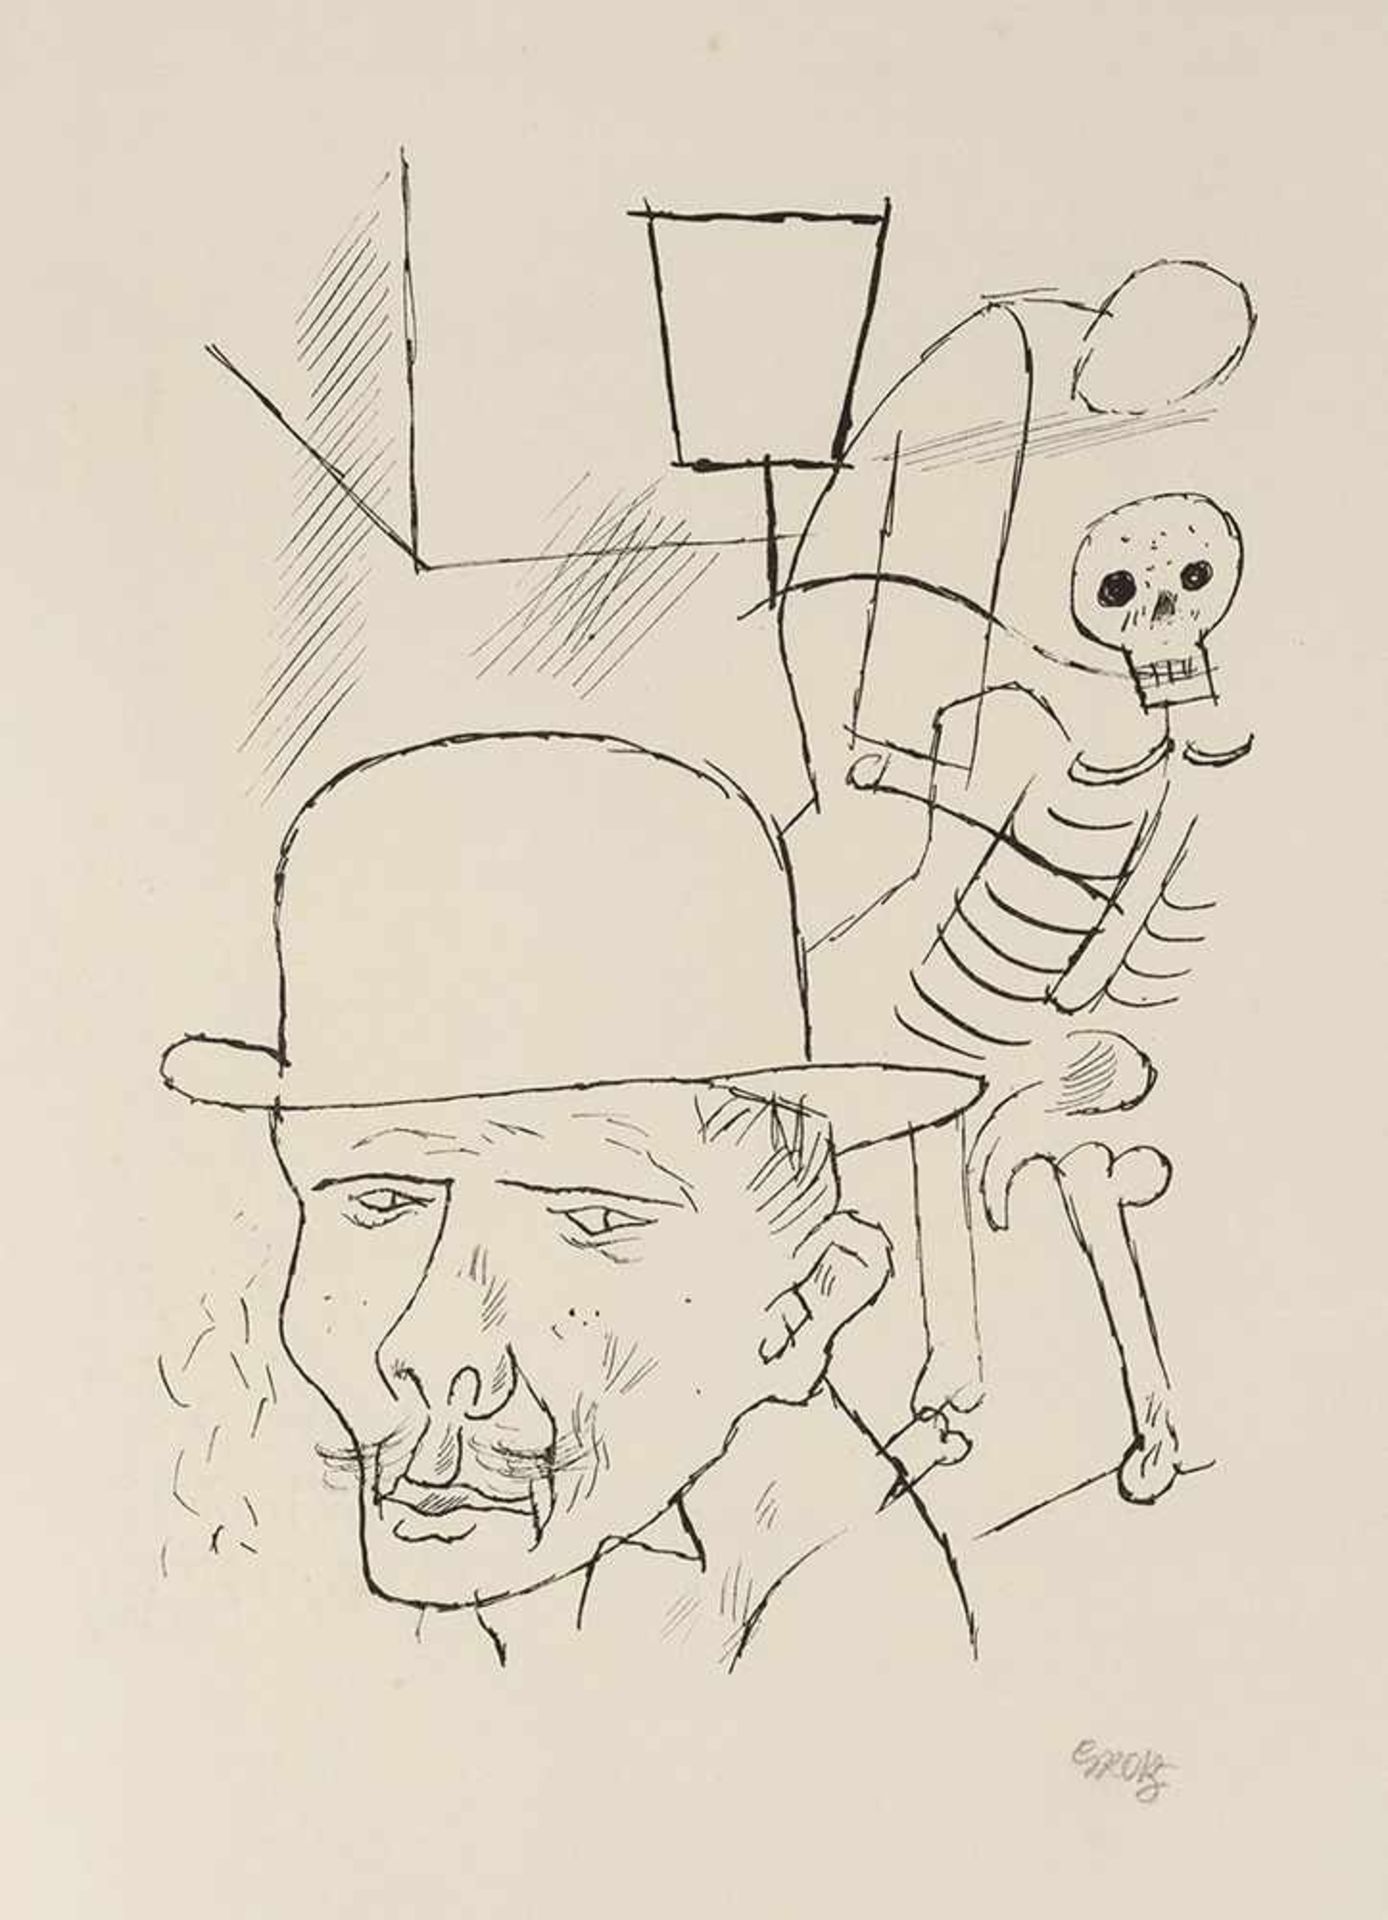 Grosz, GeorgeBerlin, 1893 - 195927,7x18,9cm,o.R."Tod auf der Strasse", 1920/21. Lithografie auf